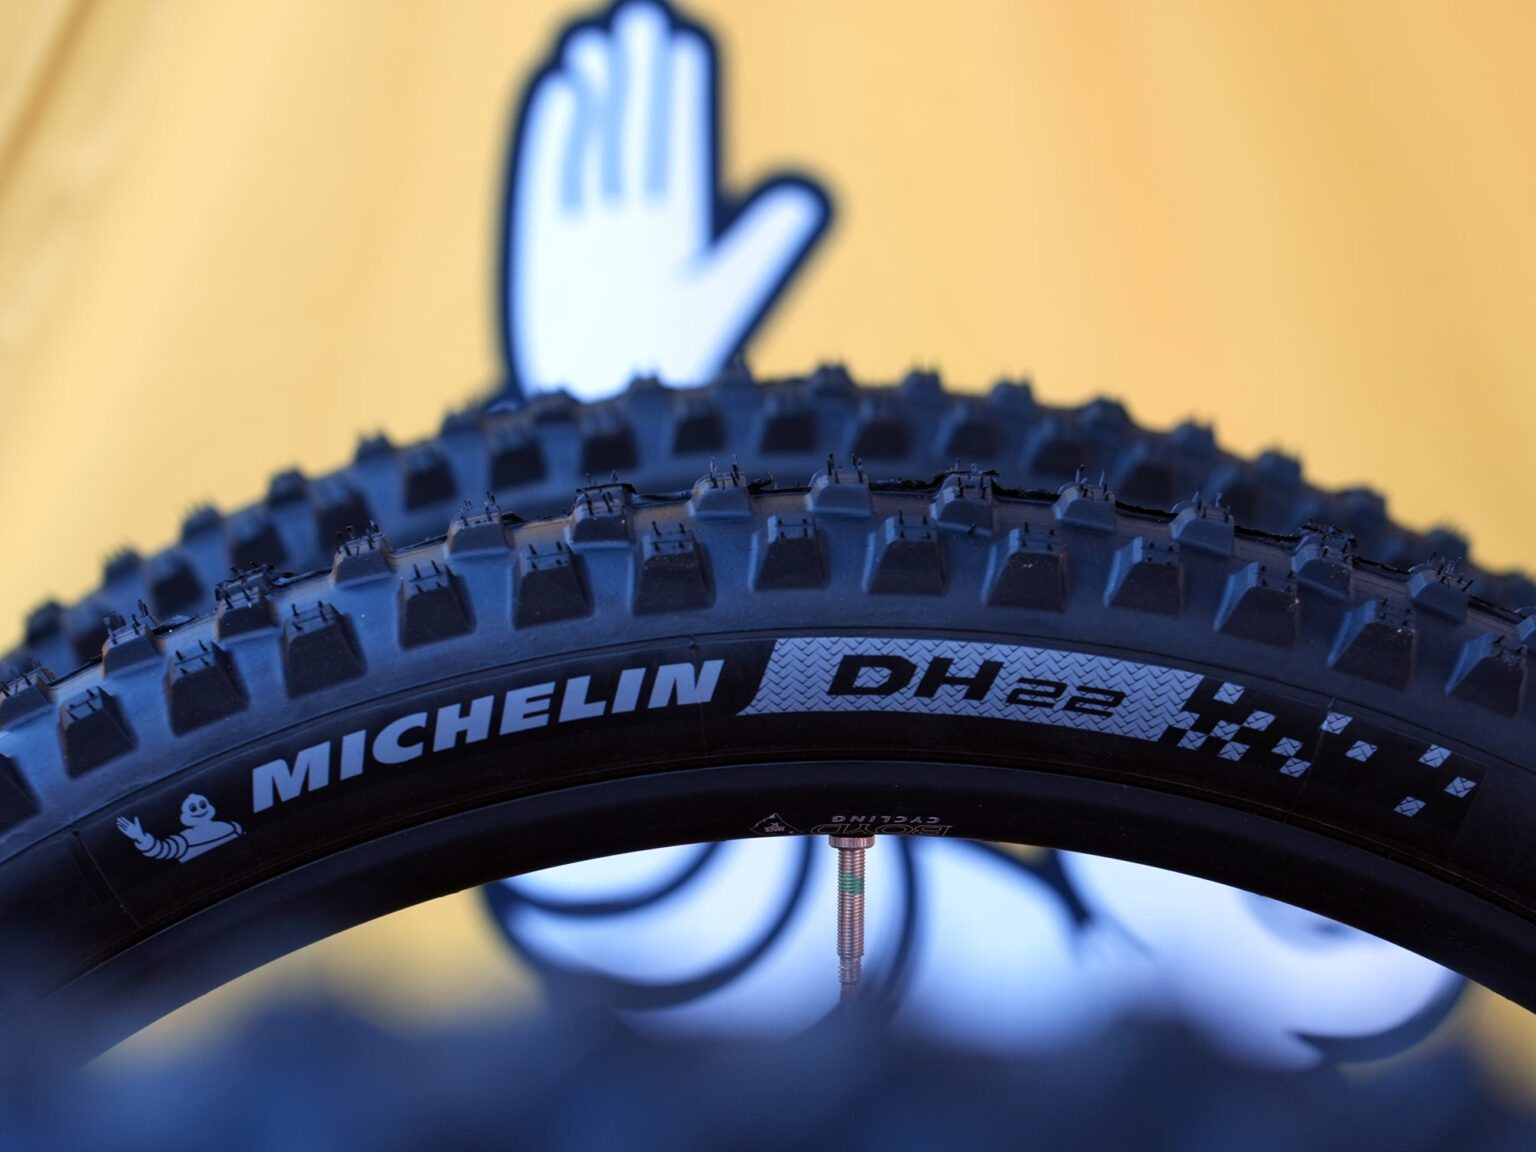 Michelin DH22 downhill mountain bike tire side profile of tread